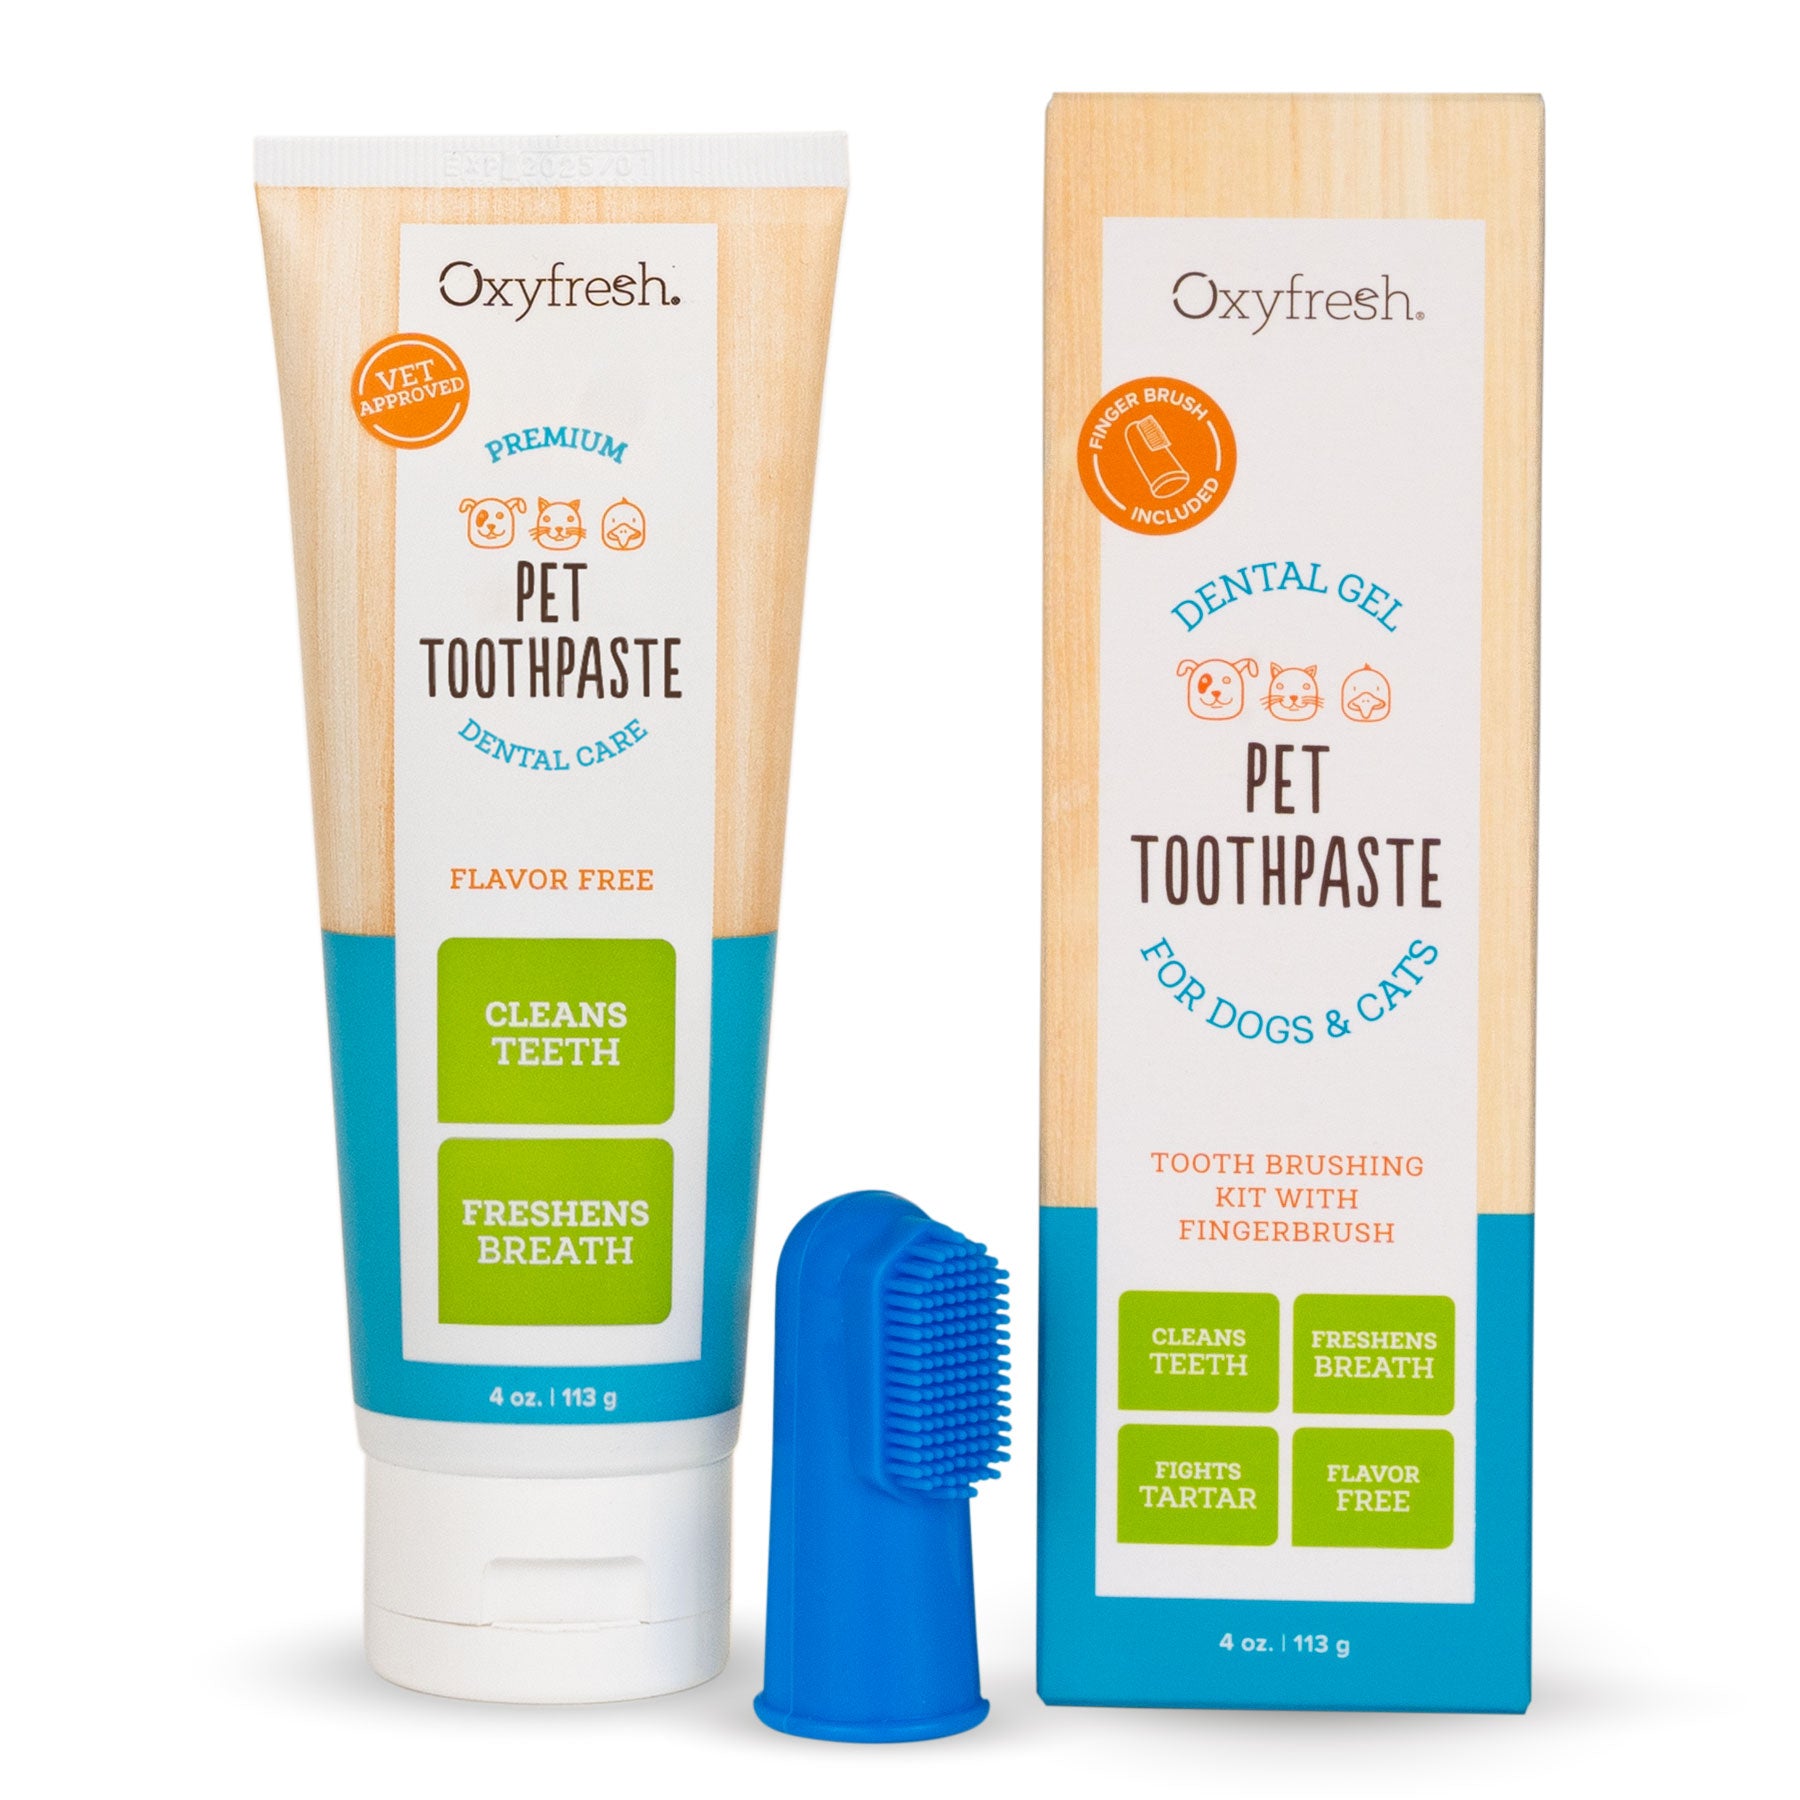 Premium Pet Toothpaste | Best Way To Clean Pet Teeth & Remove Plaque